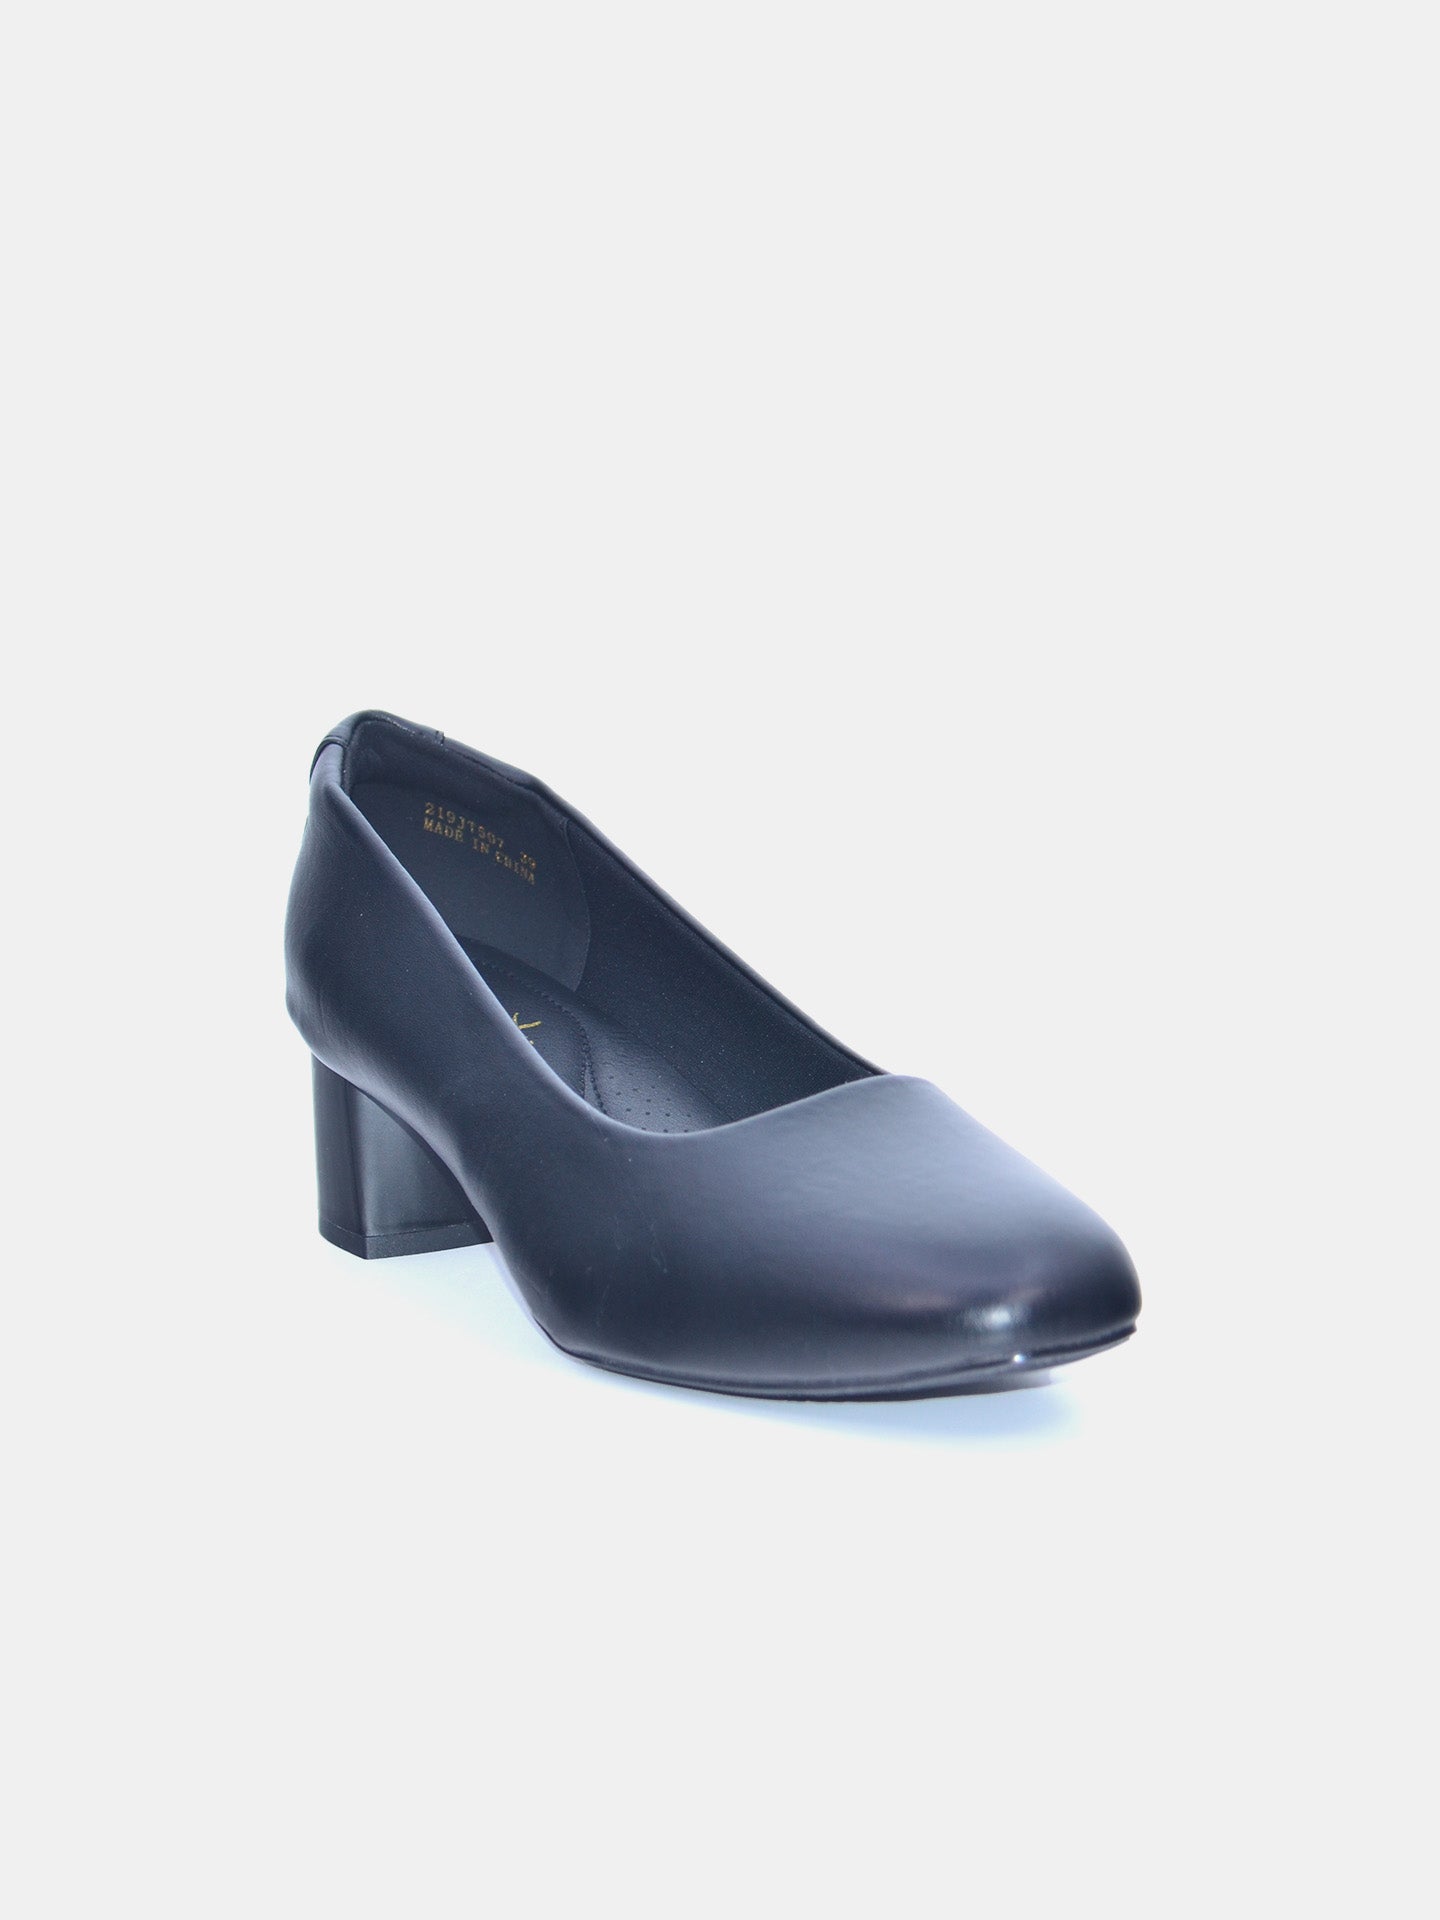 Michelle Morgan 219JT507 Women's Heeled Sandals #color_Black